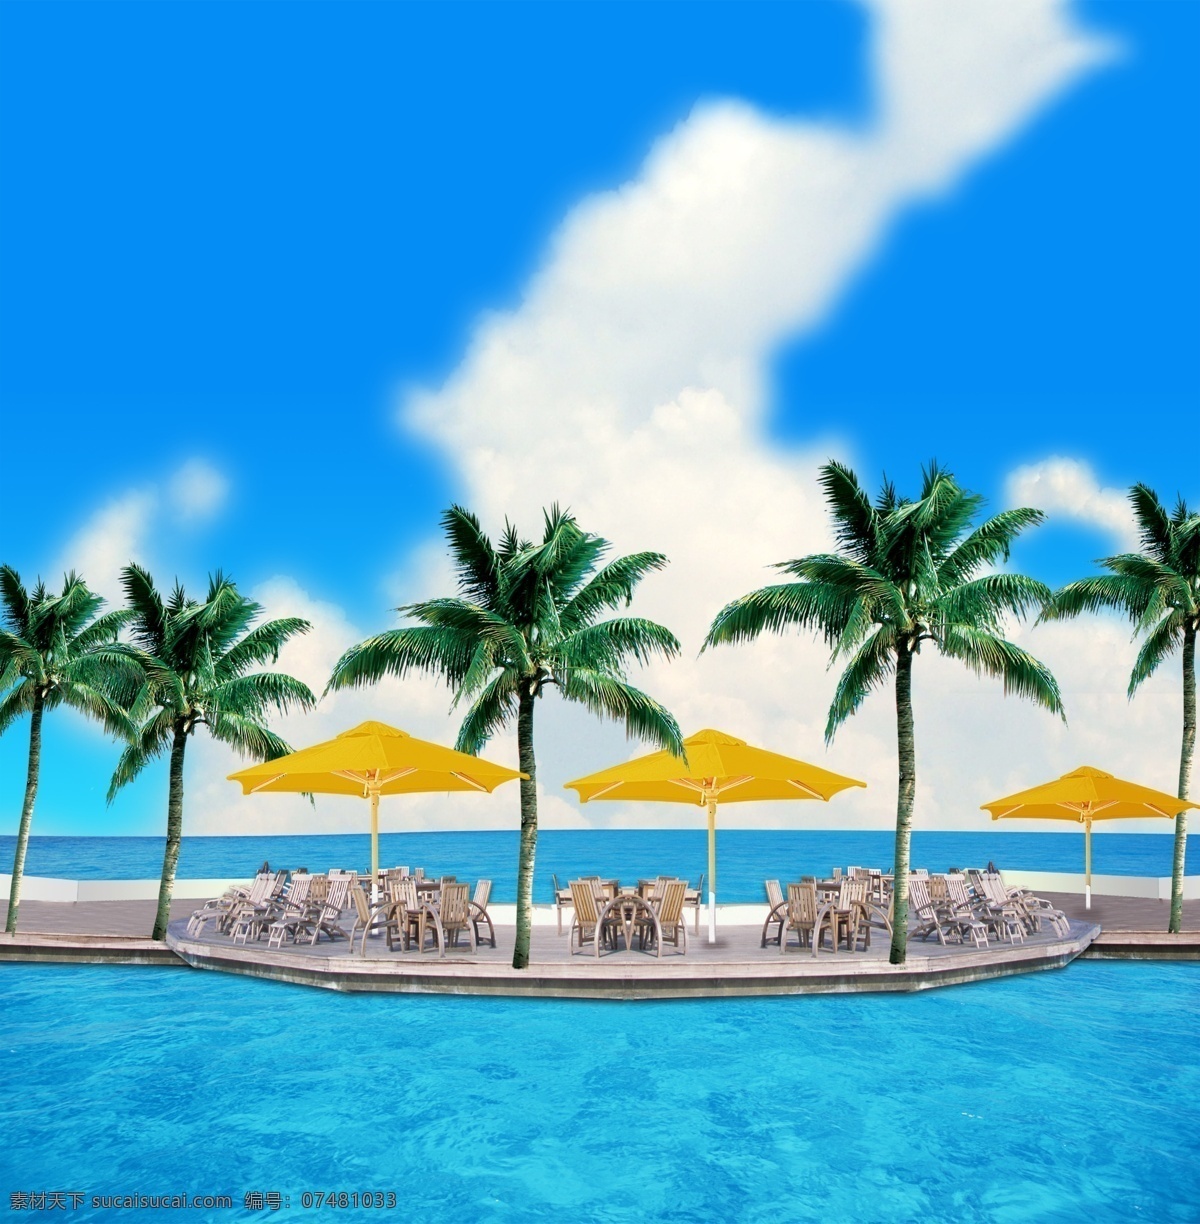 海滨休闲风景 大海 桌子 凳子 椰树 蓝天 白云 环境设计 景观设计